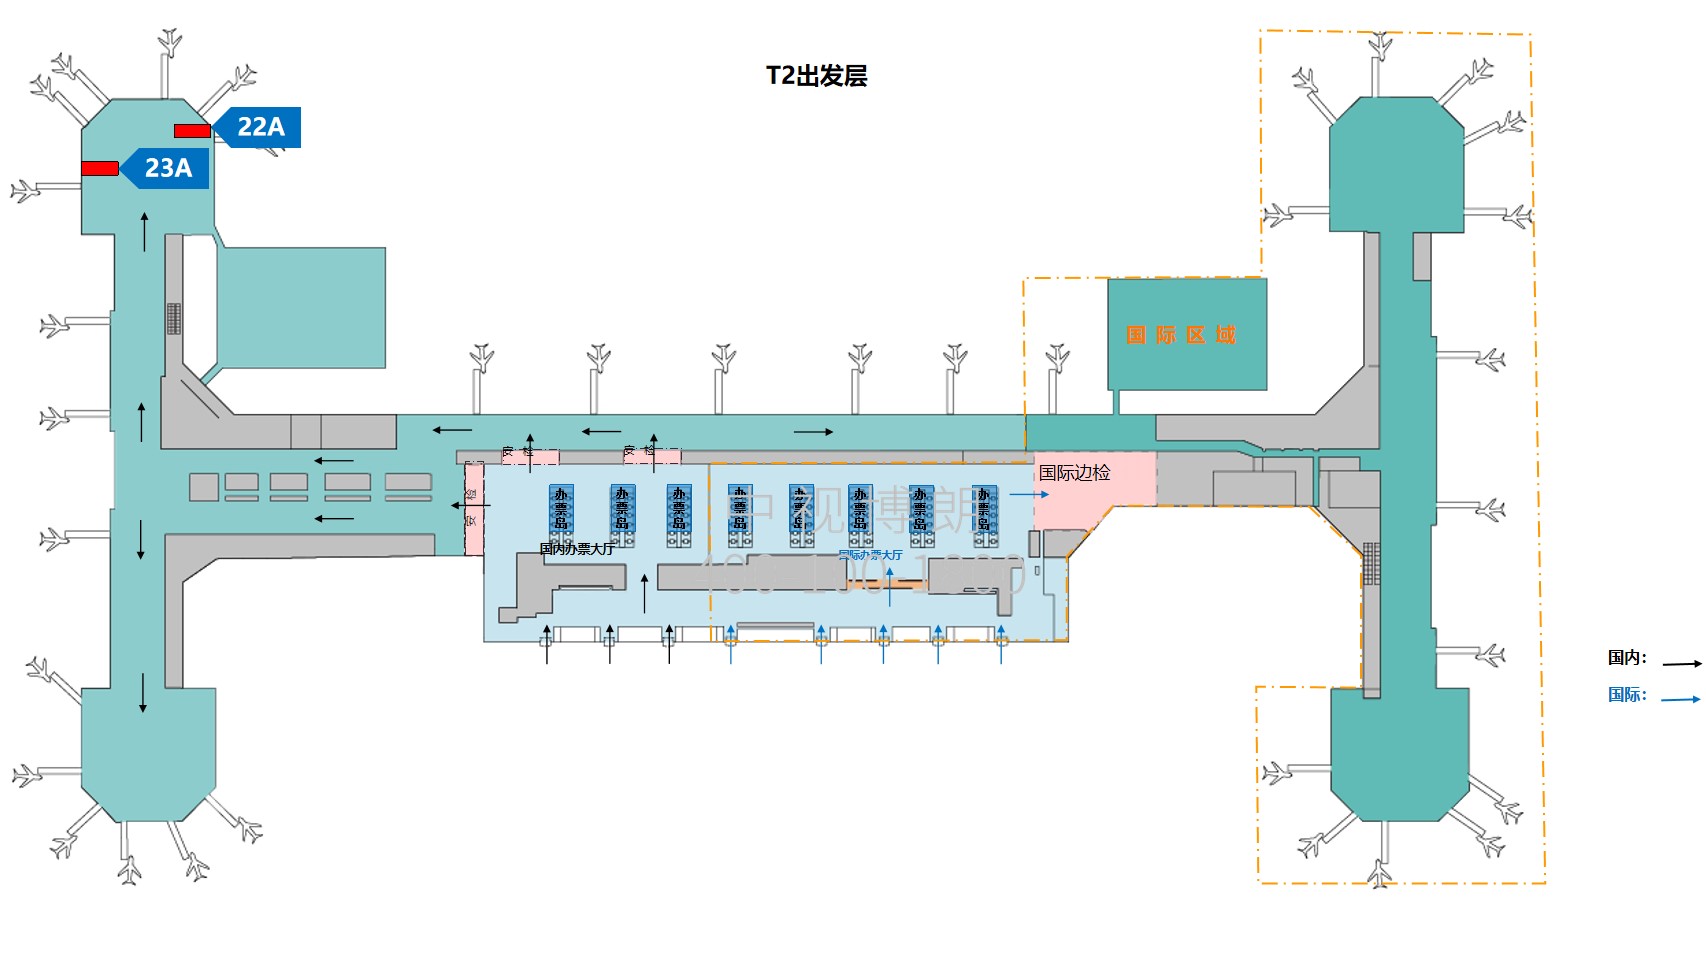 北京首都机场广告-T2 Domestic Departure Waiting Area Wall Light Box Set位置图